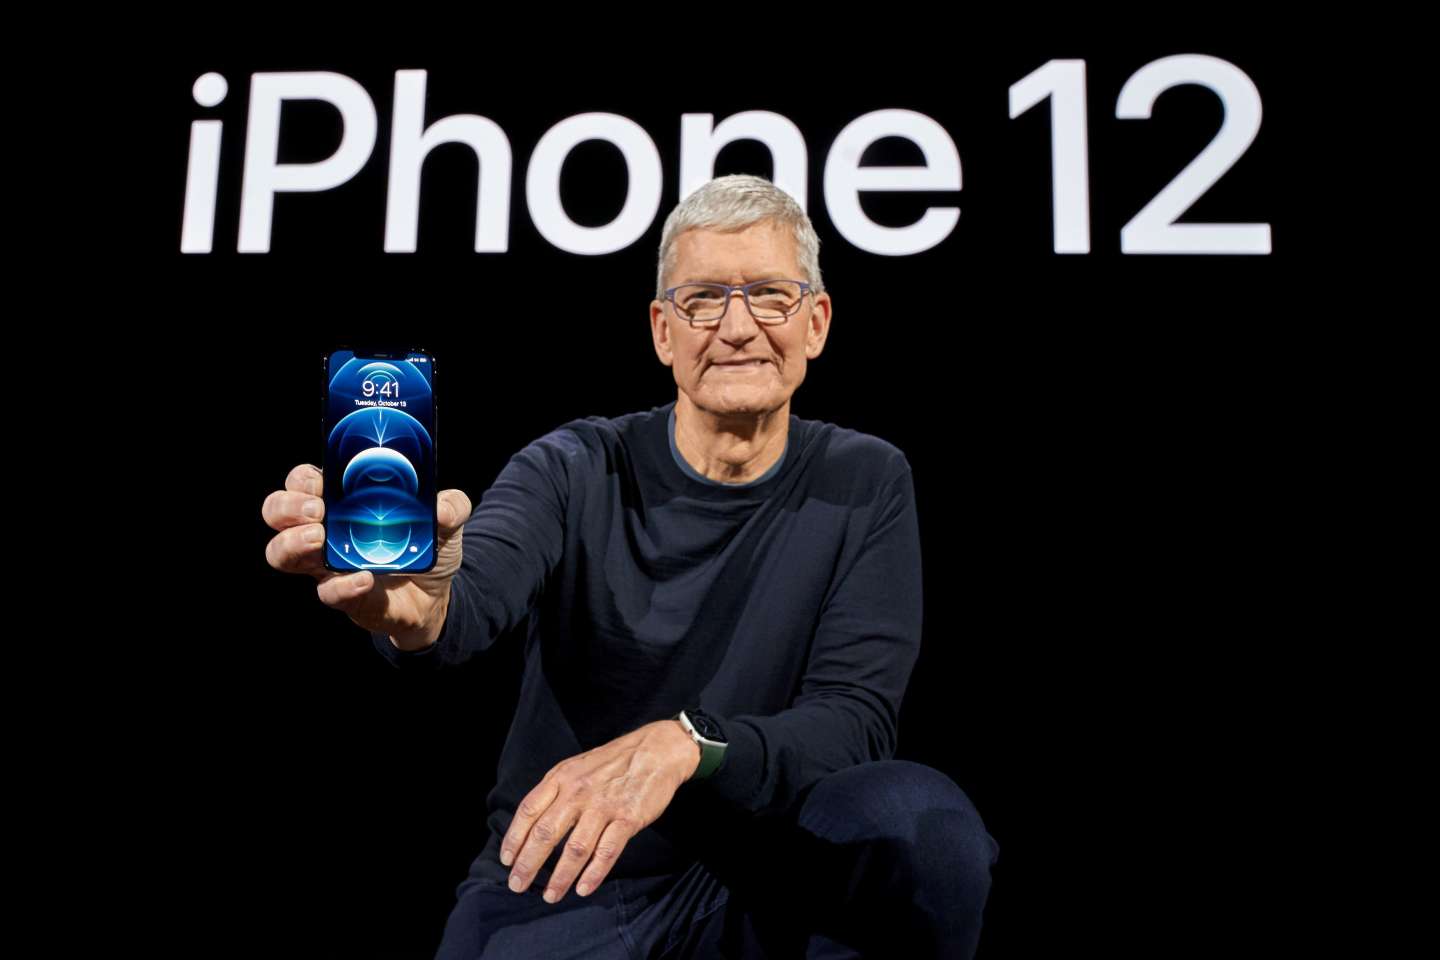 L’iPhone 12 interdit temporairement de vente en raison d’ondes trop puissantes